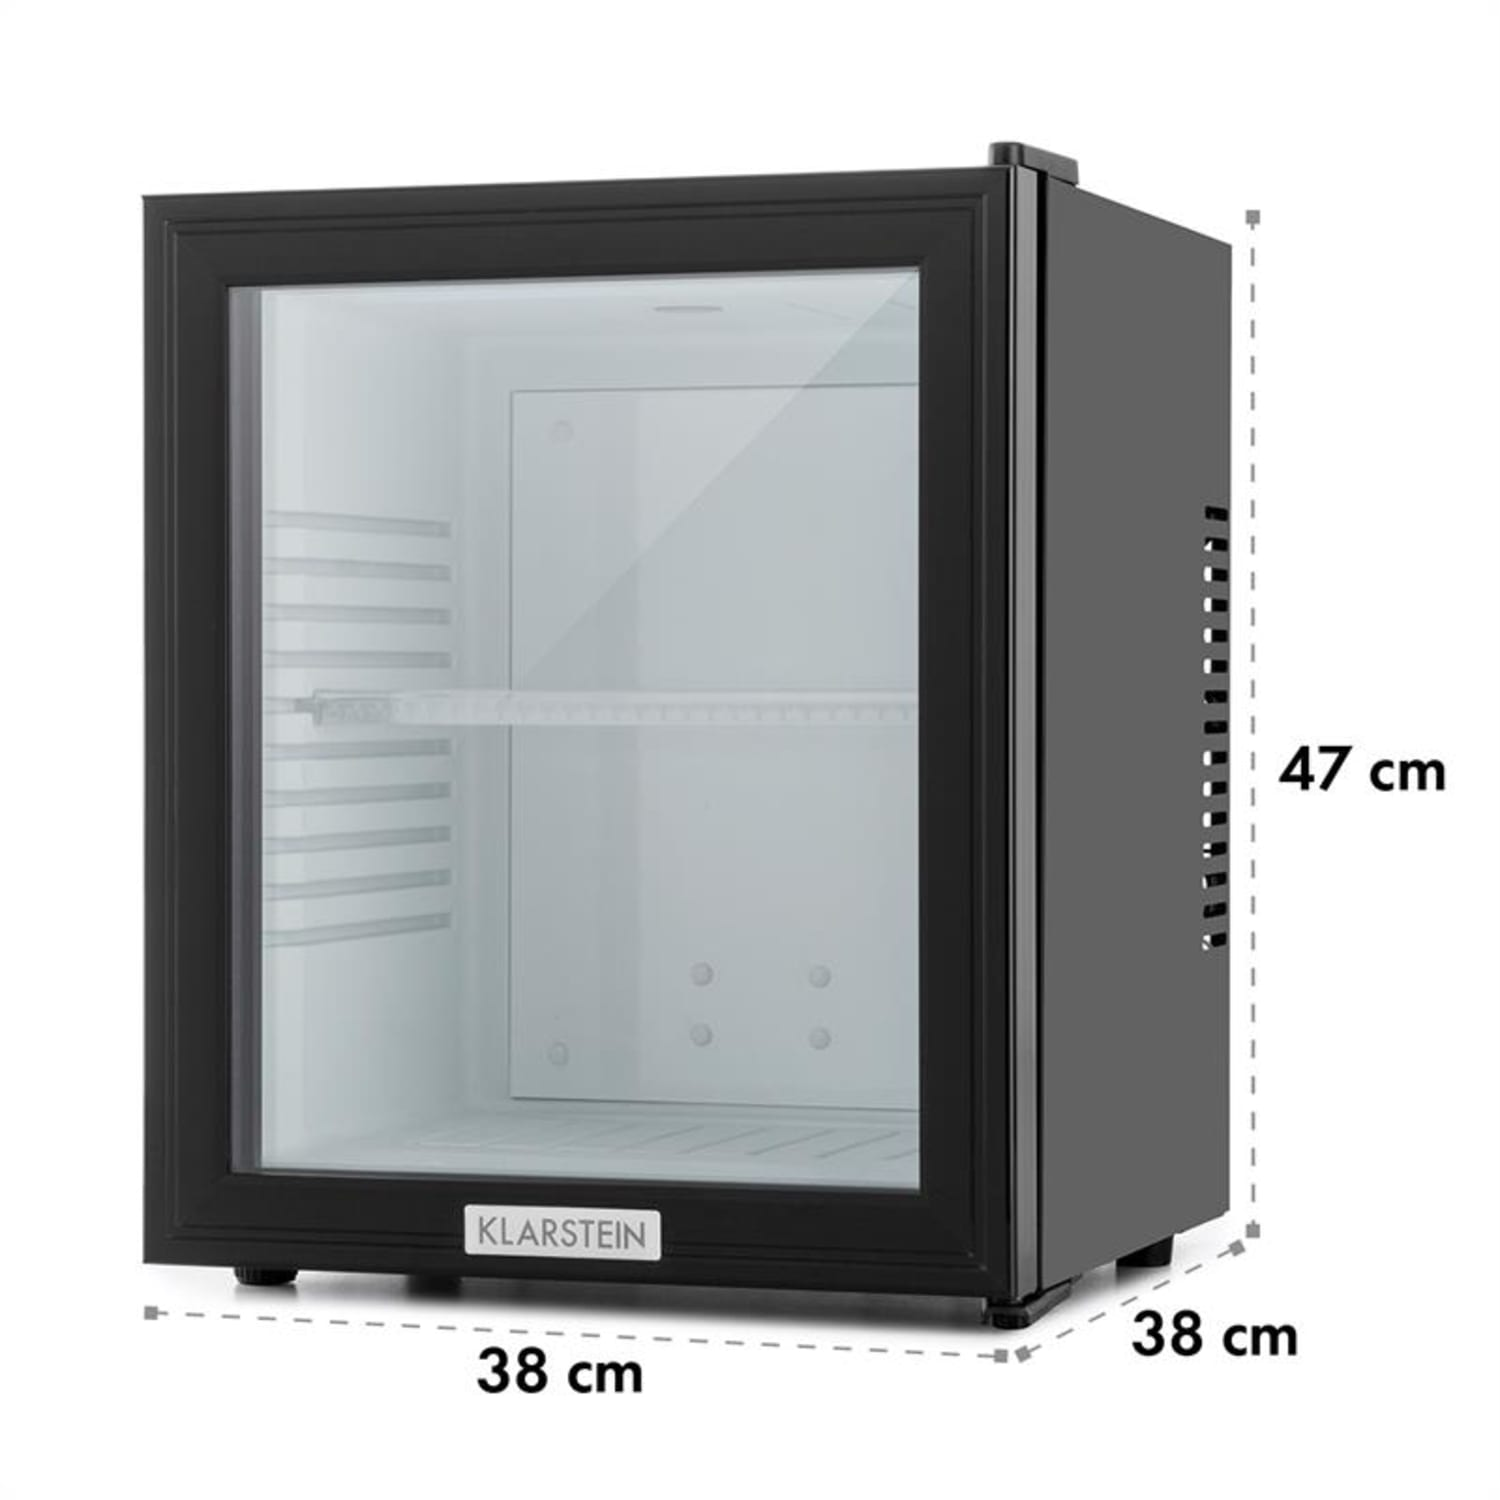 KLARSTEIN MKS-12 Mini-Kühlschrank (E, Weiß) hoch, 47 cm Schwarz 